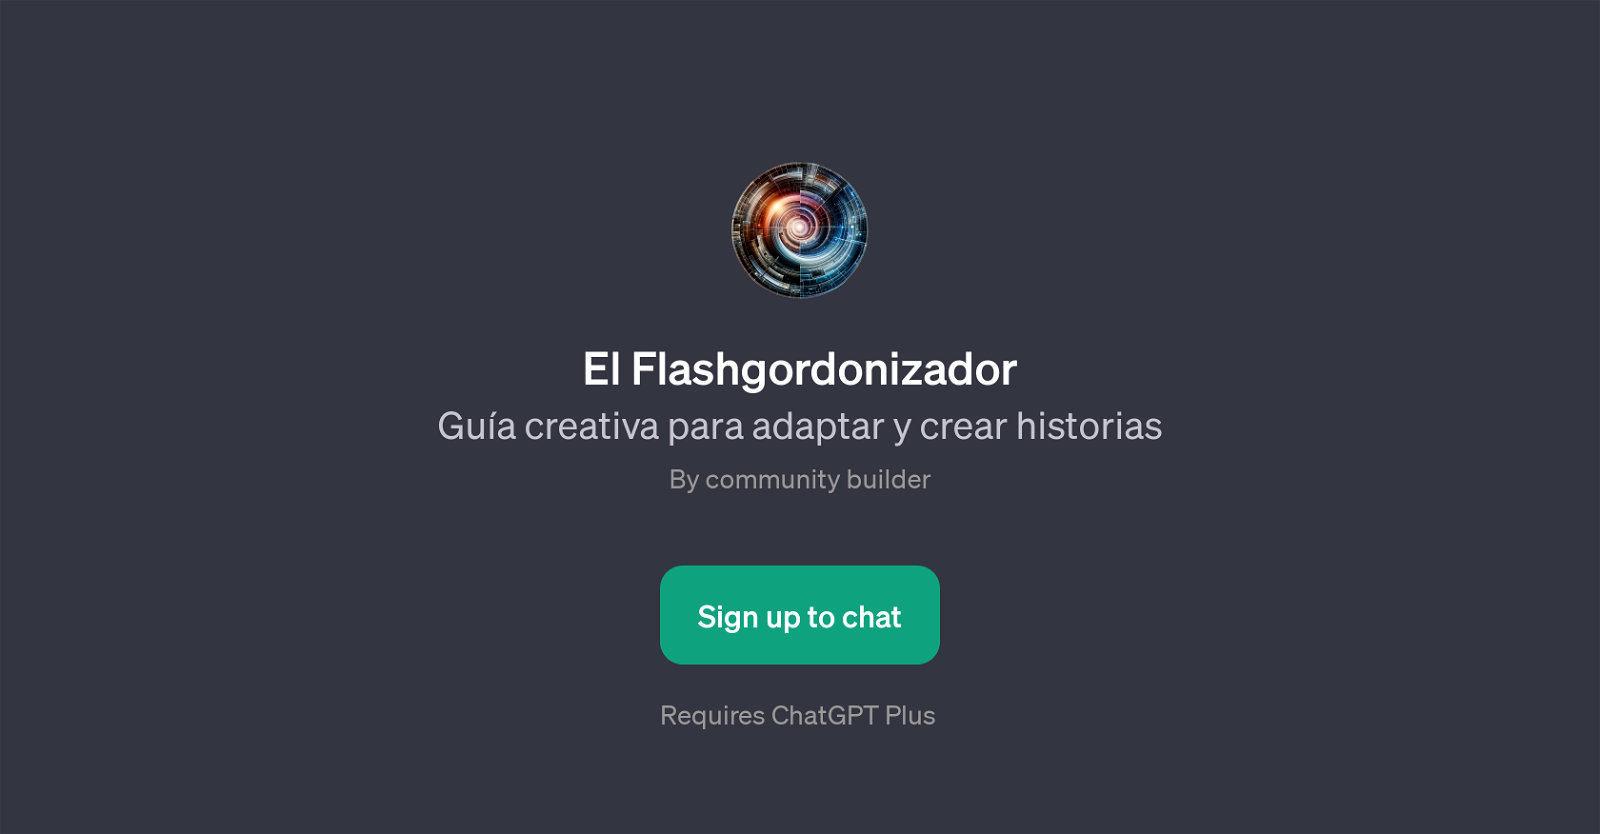 El Flashgordonizador website